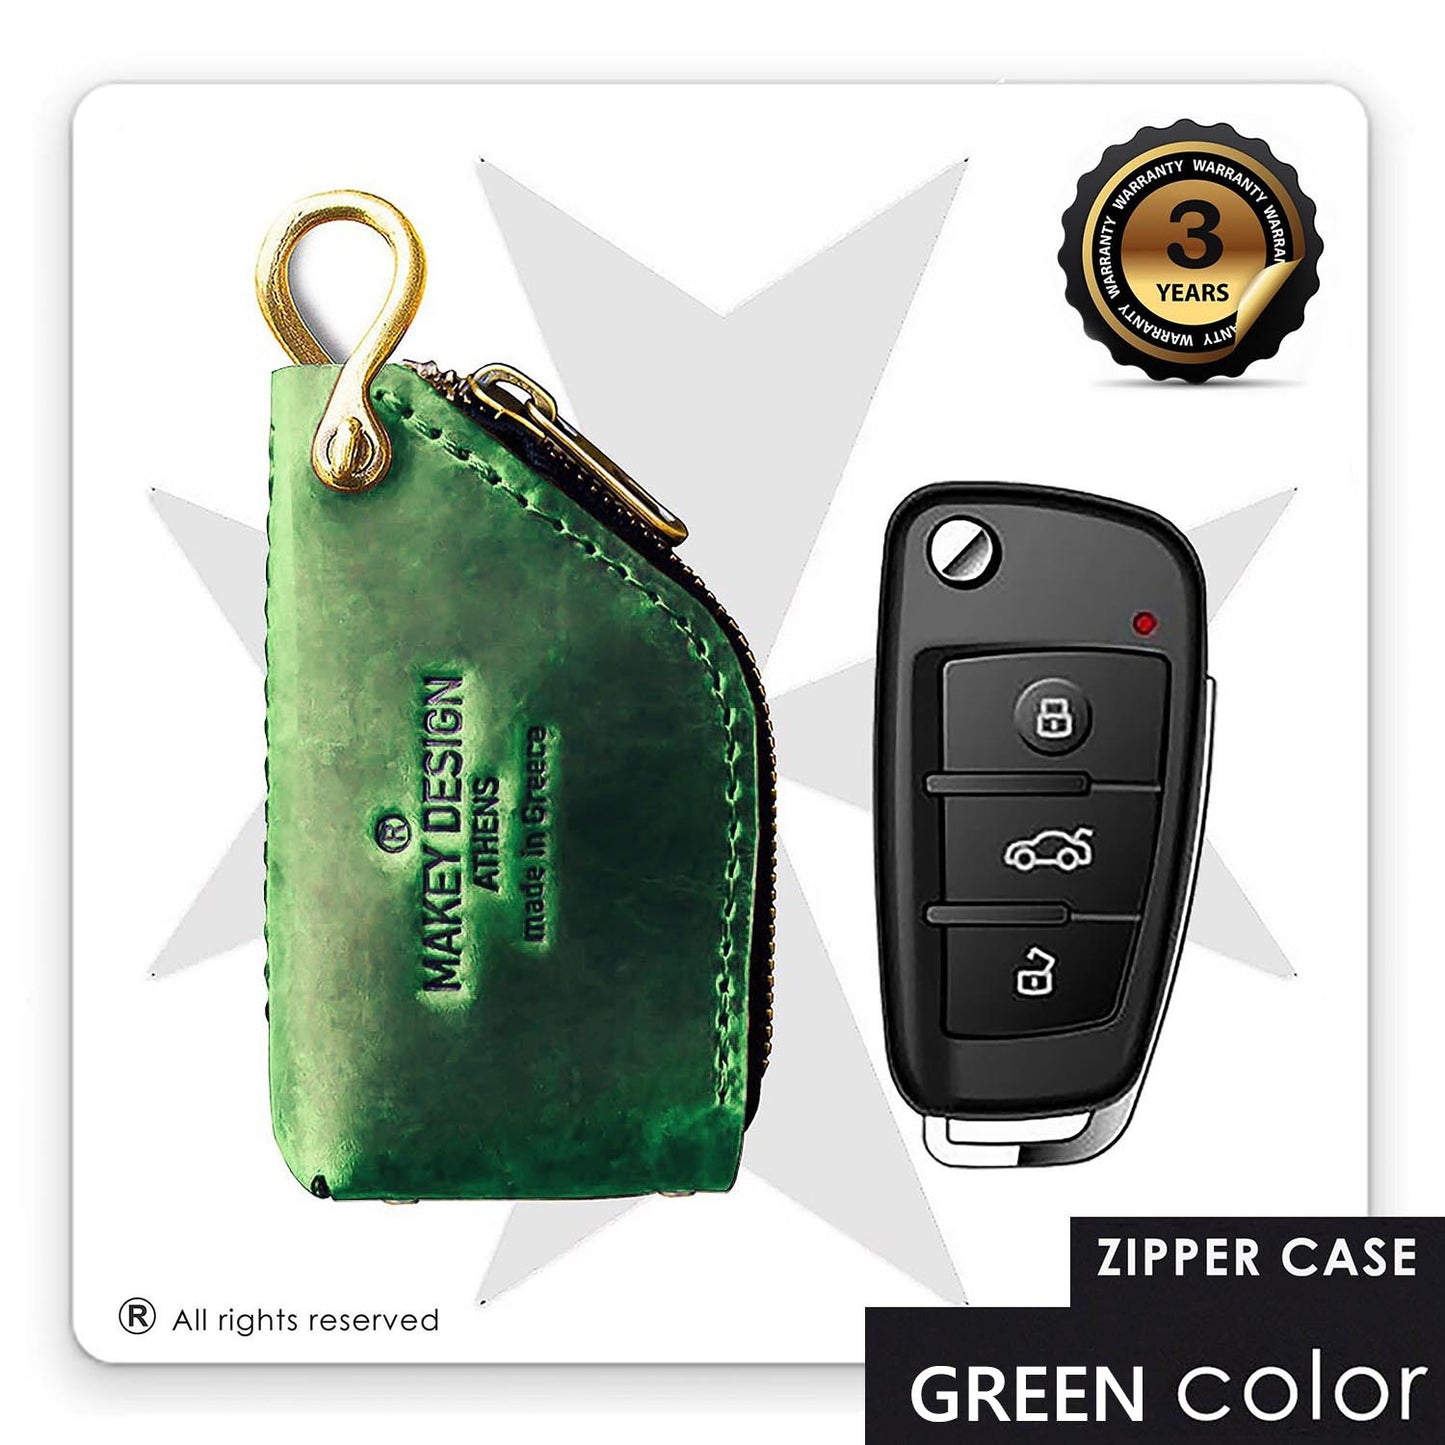 Κλειδοθήκη Αυτοκινητου "Zipper" universal